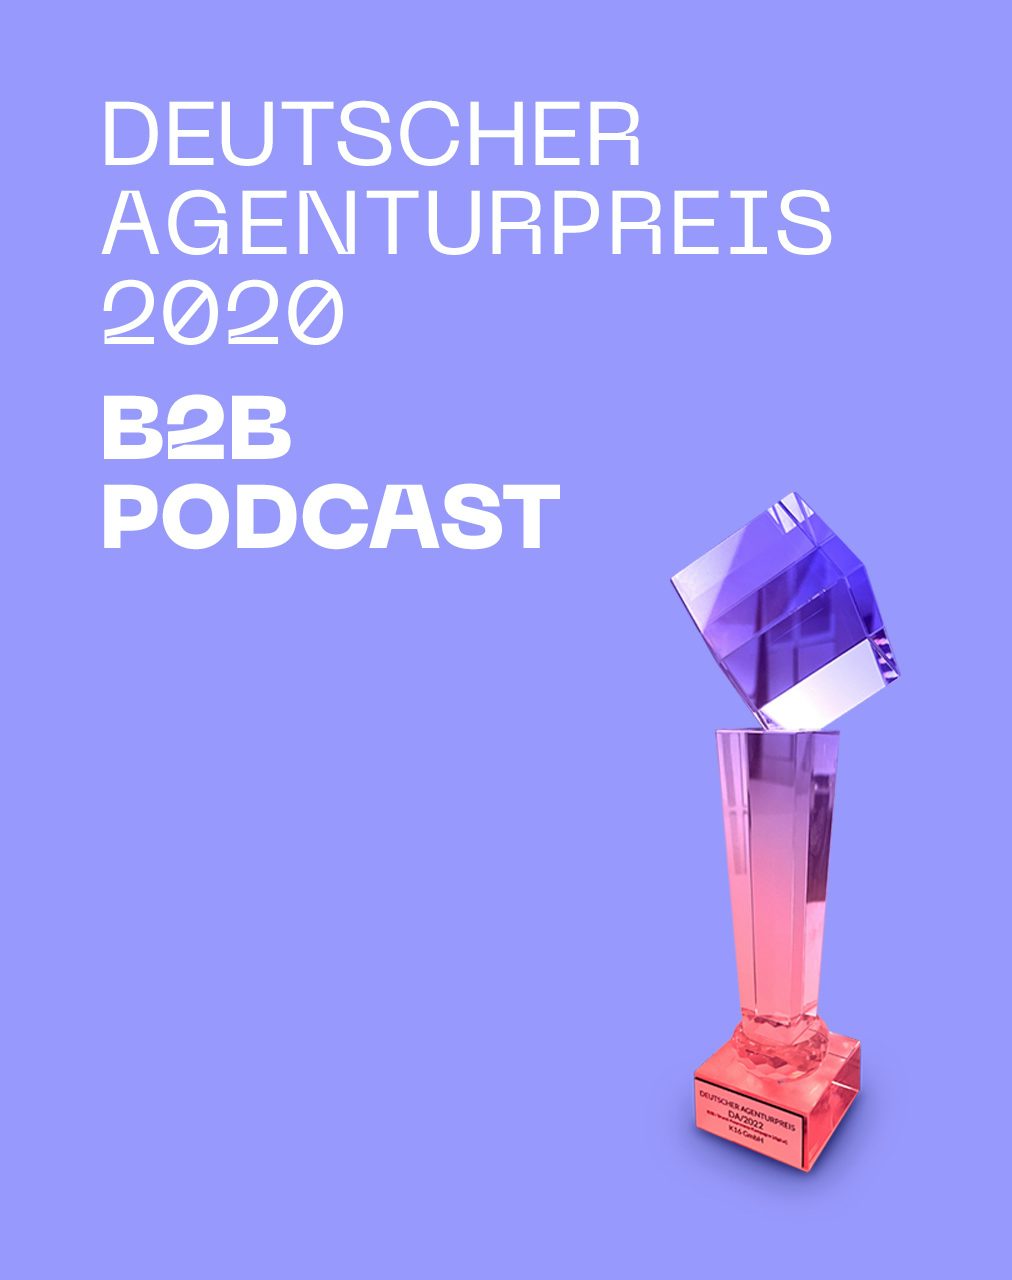 Deutscher Agenturpreis 2020 B2B Podcast